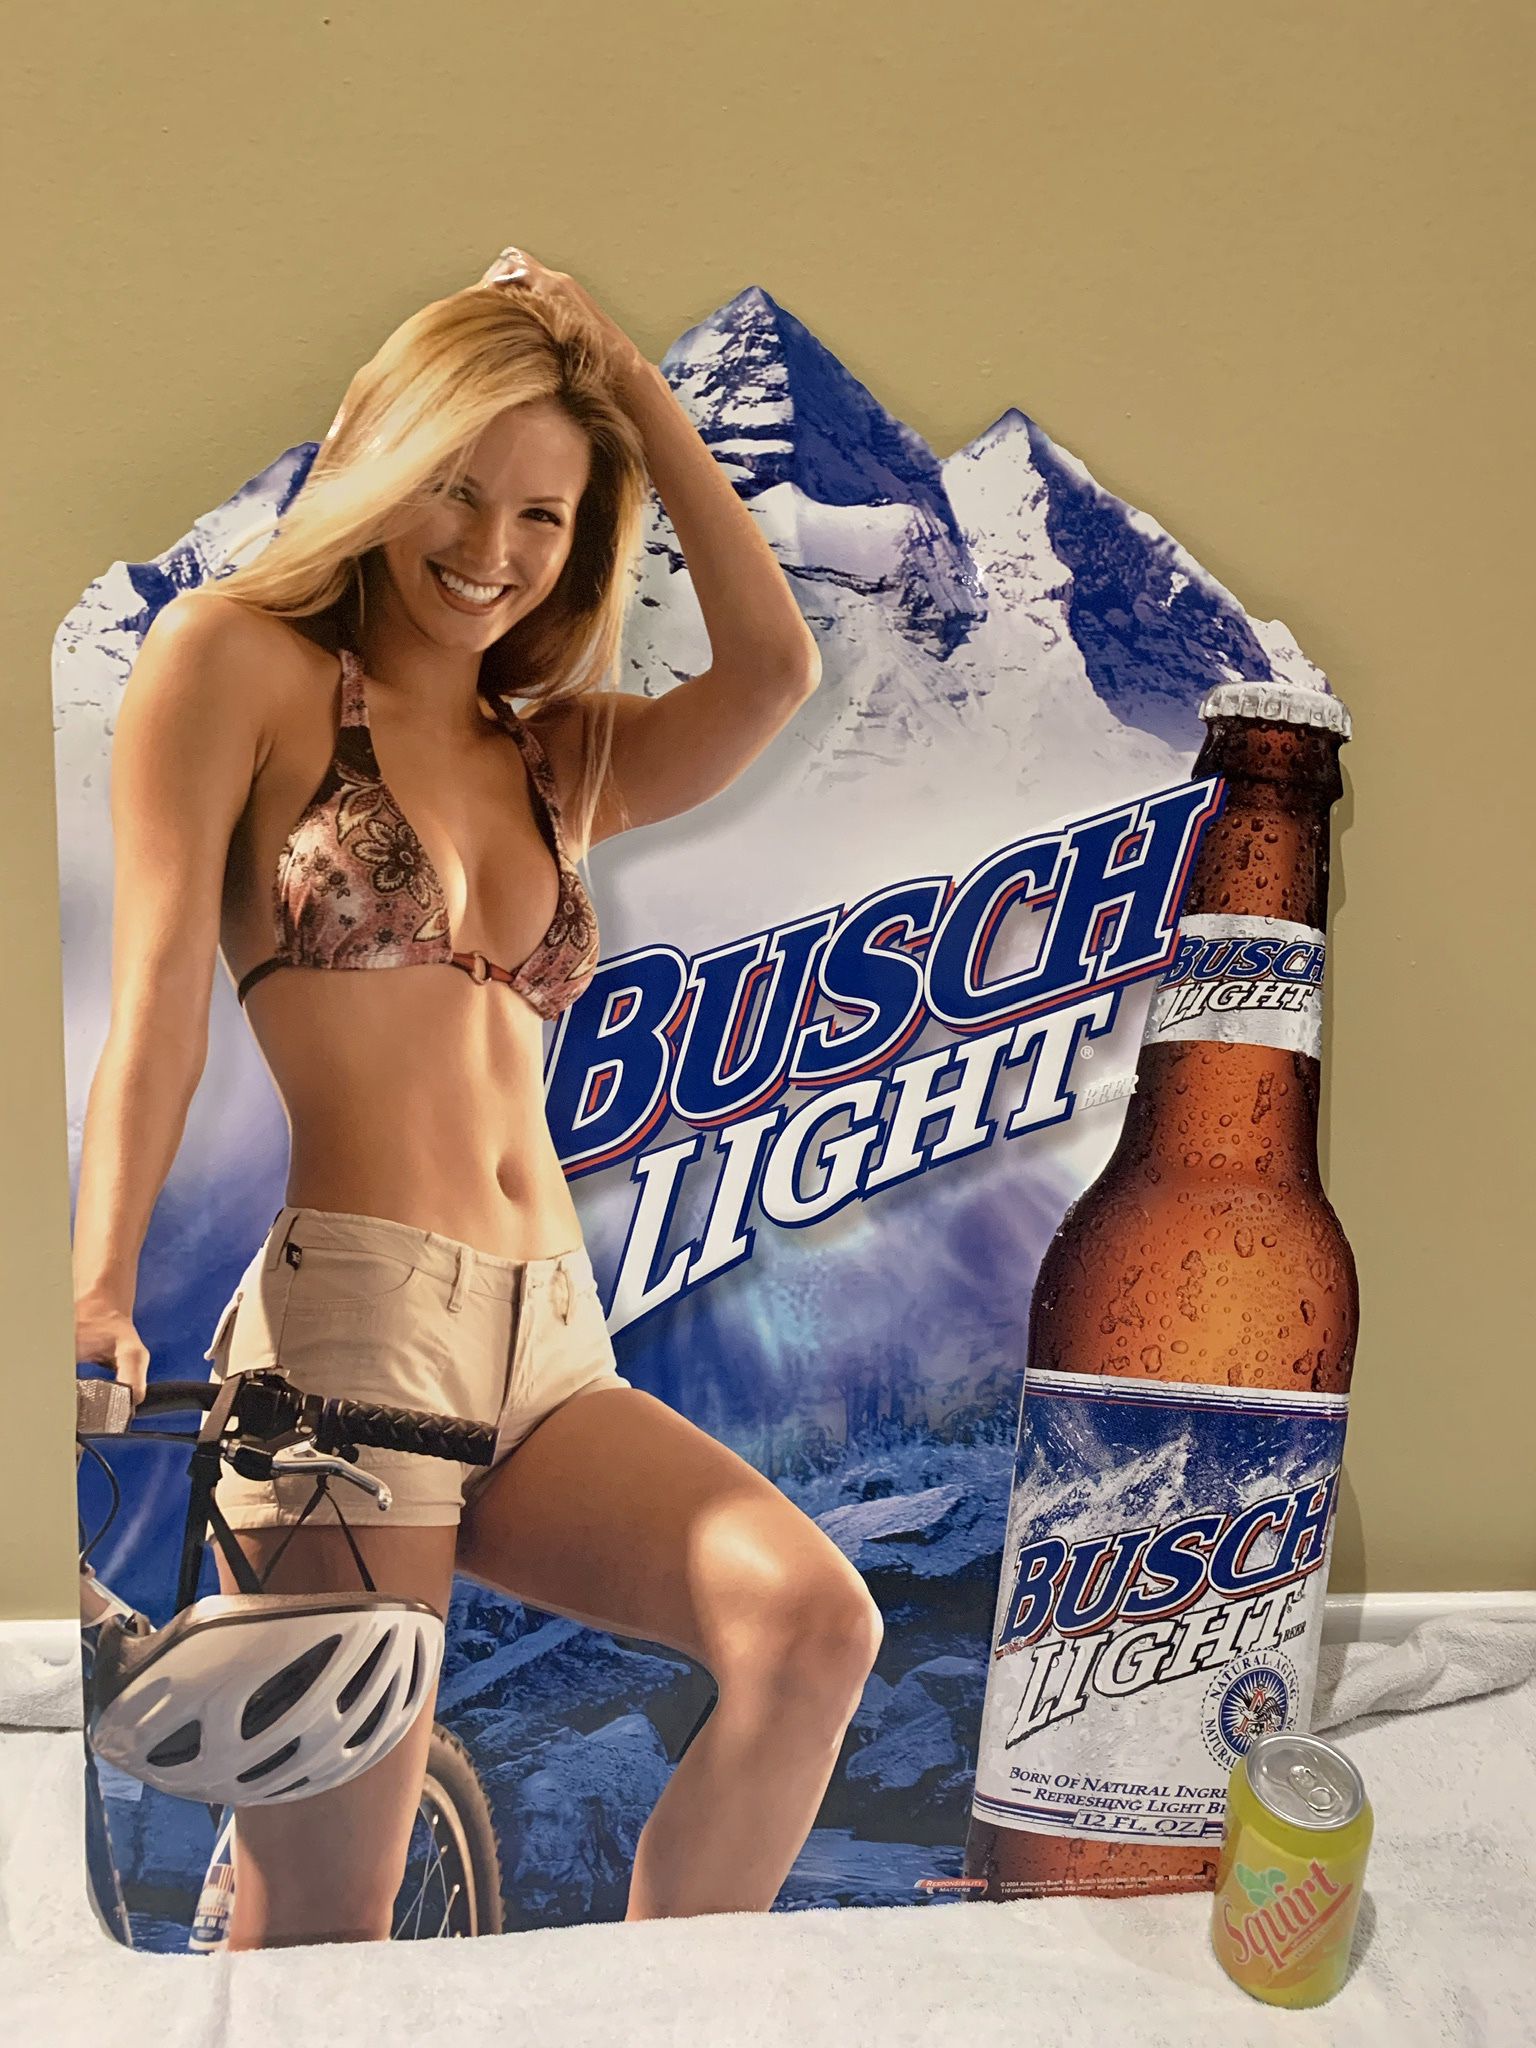 Busch Light Beer Mountain Biking metal sign